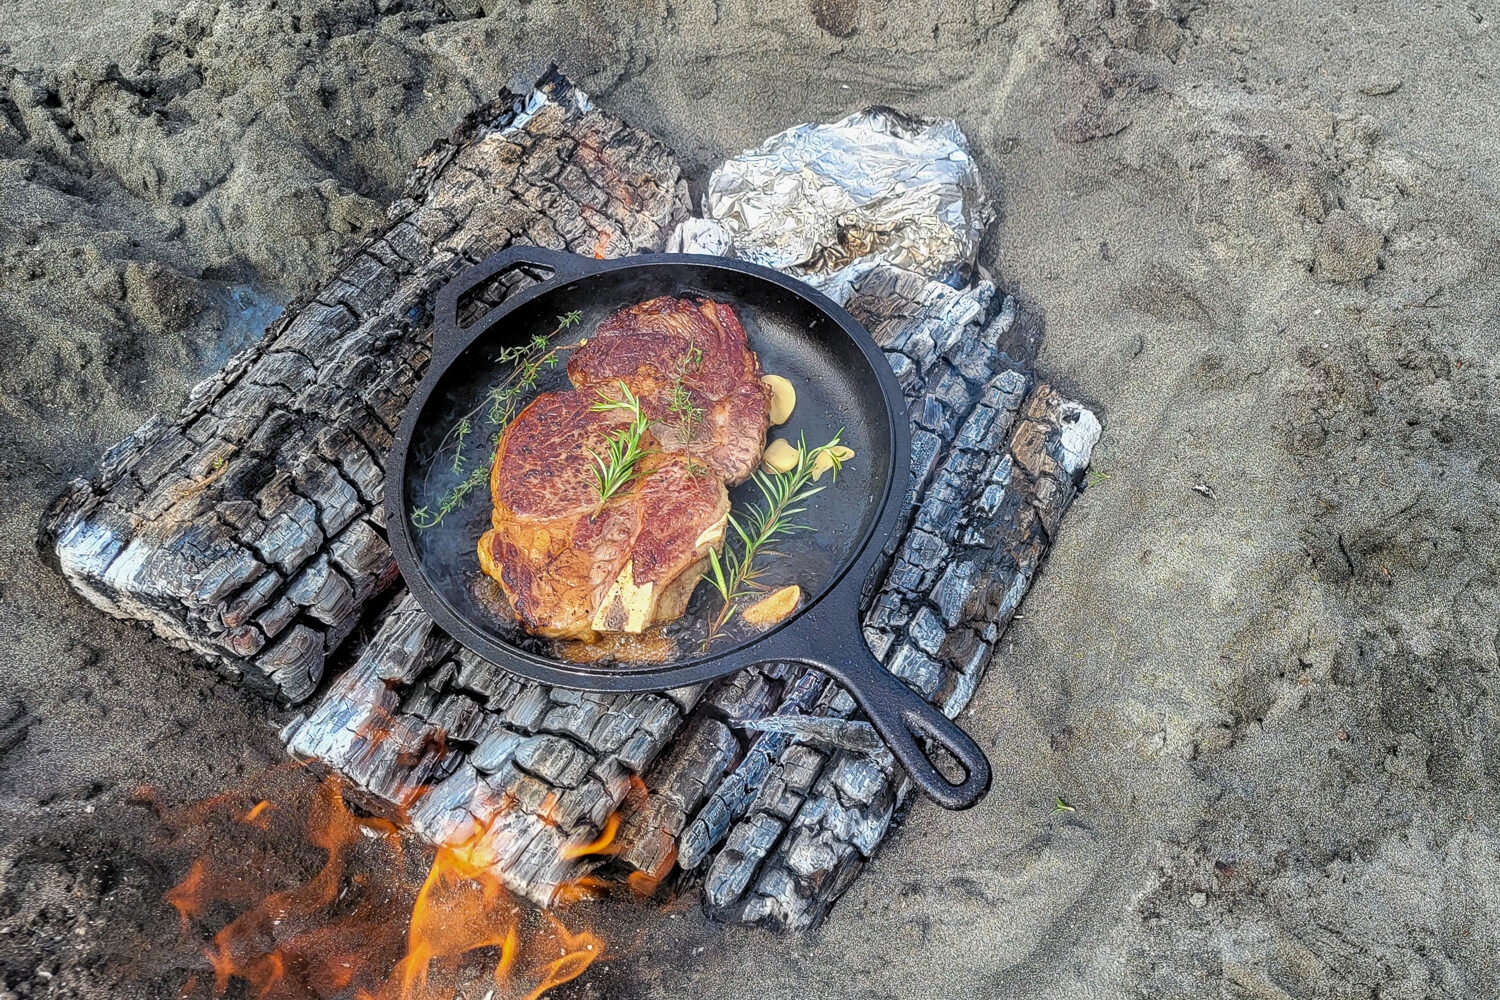 Camping Cooking Pan